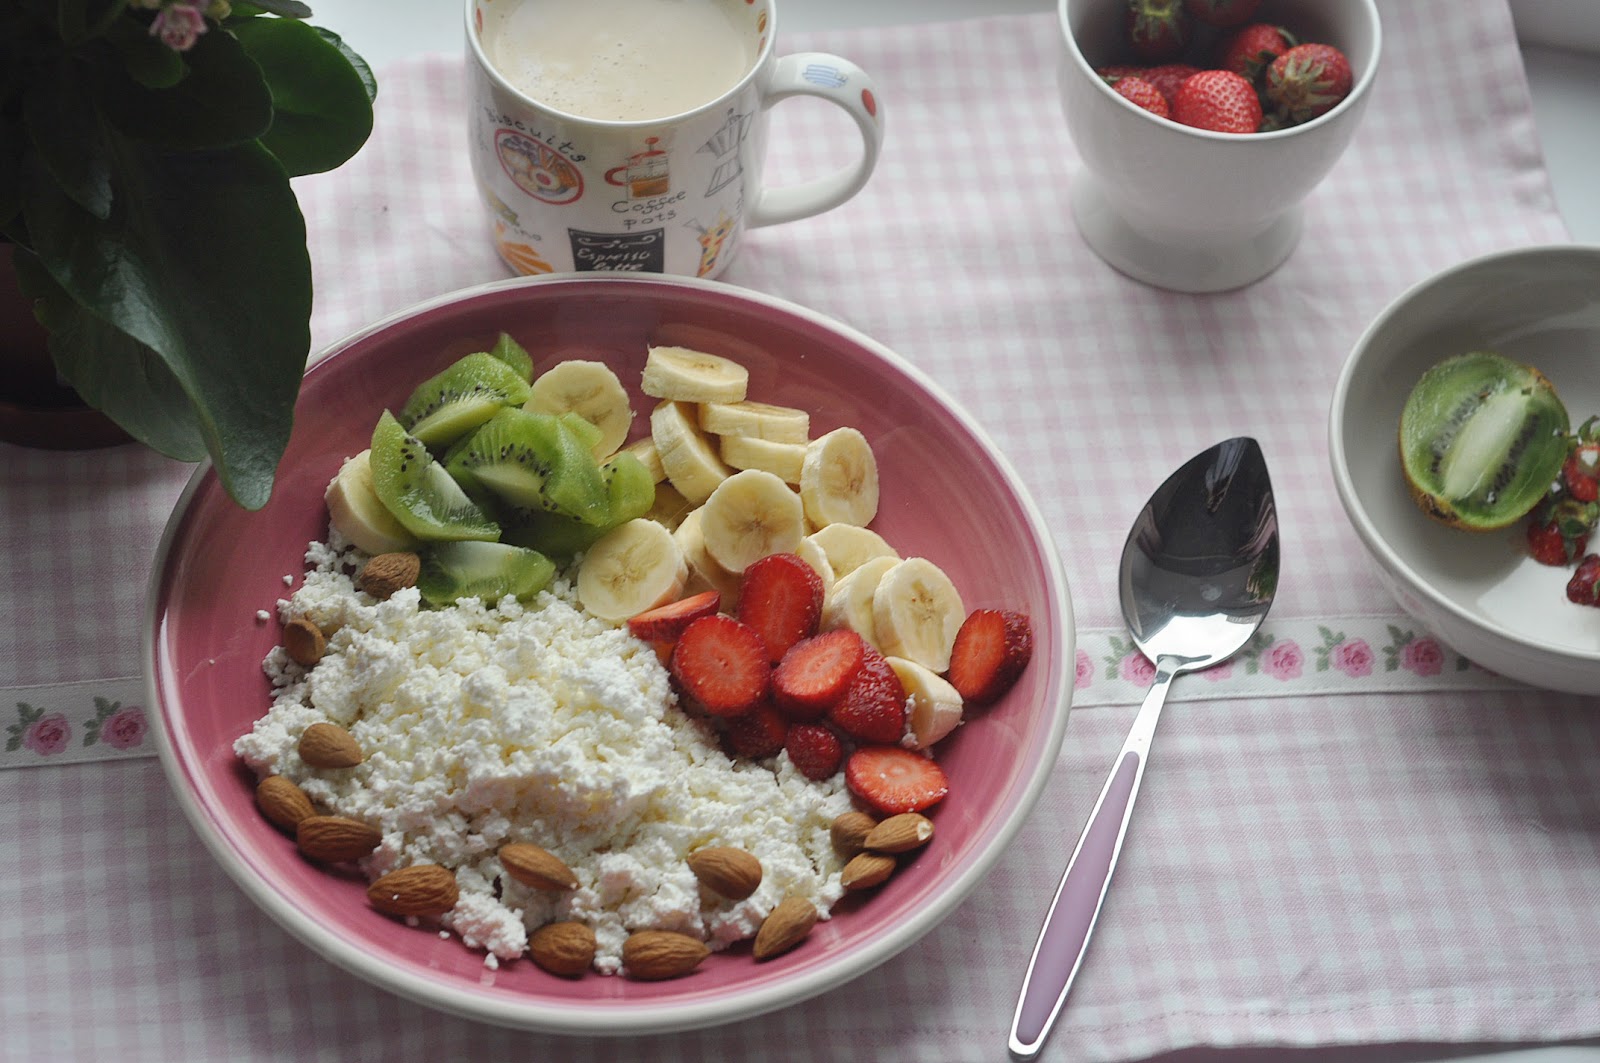 Завтраки Полезные И Вкусные Для Правильного Питания